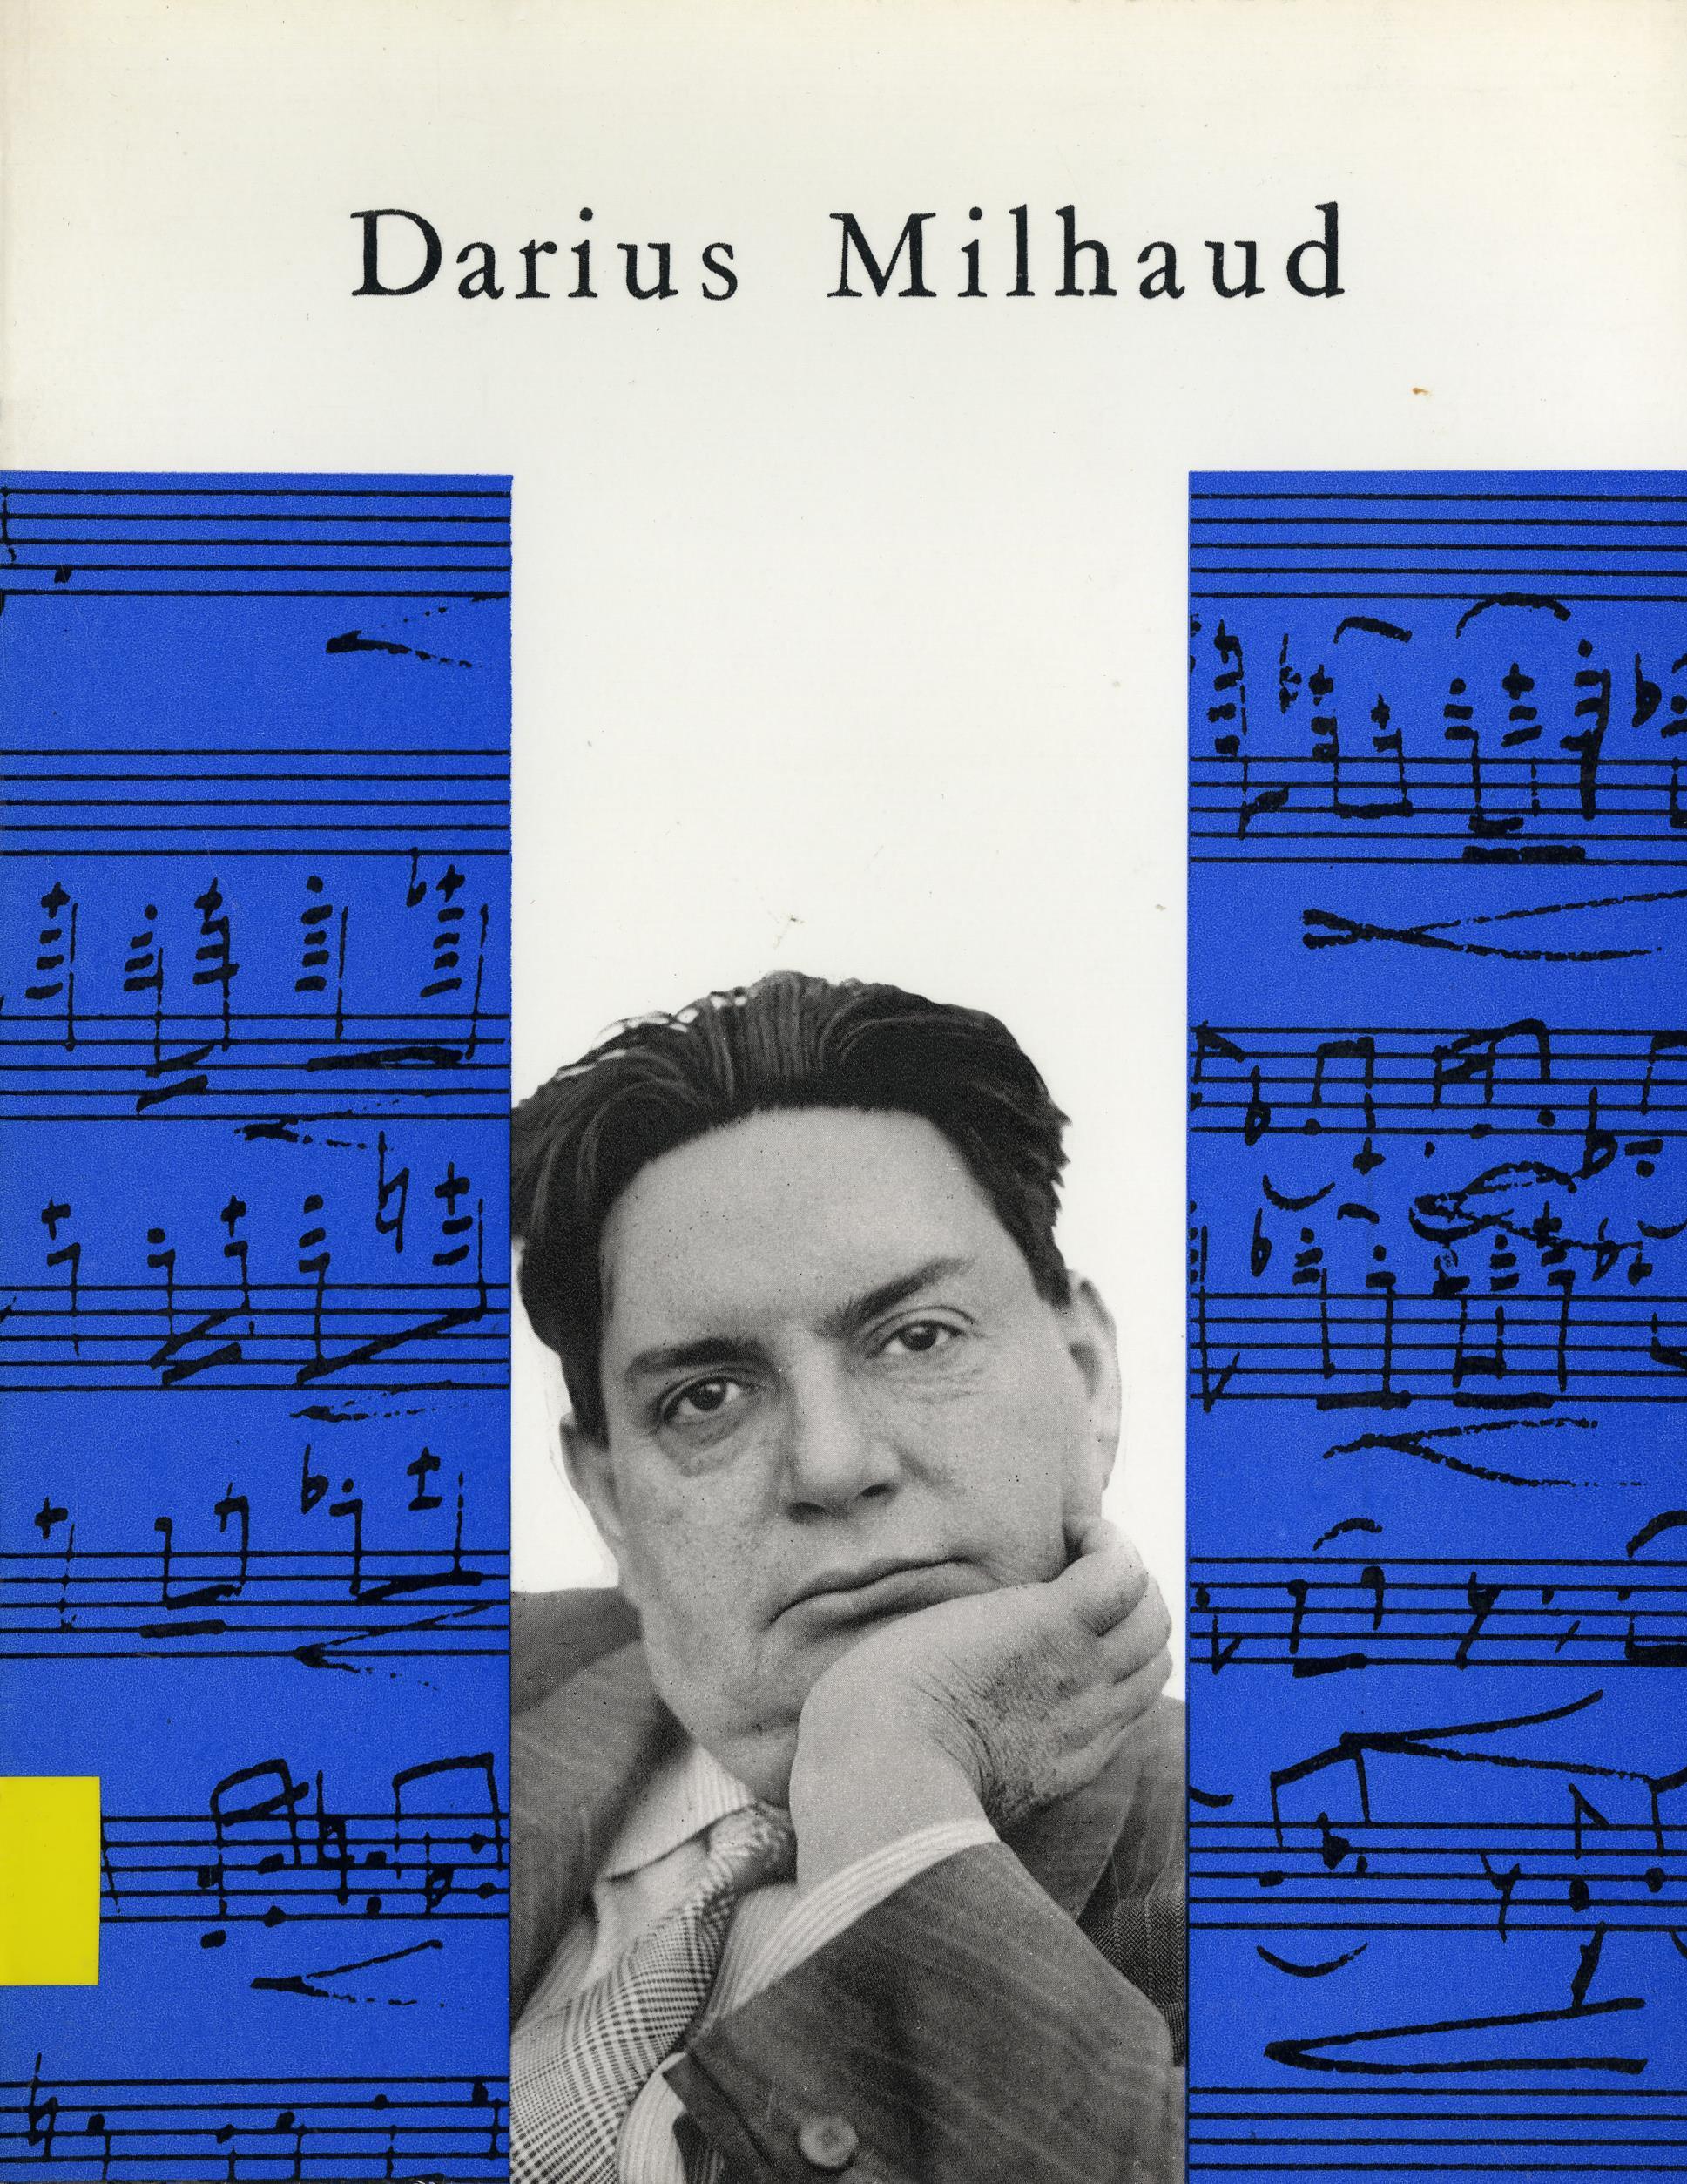 Darius Milhaud